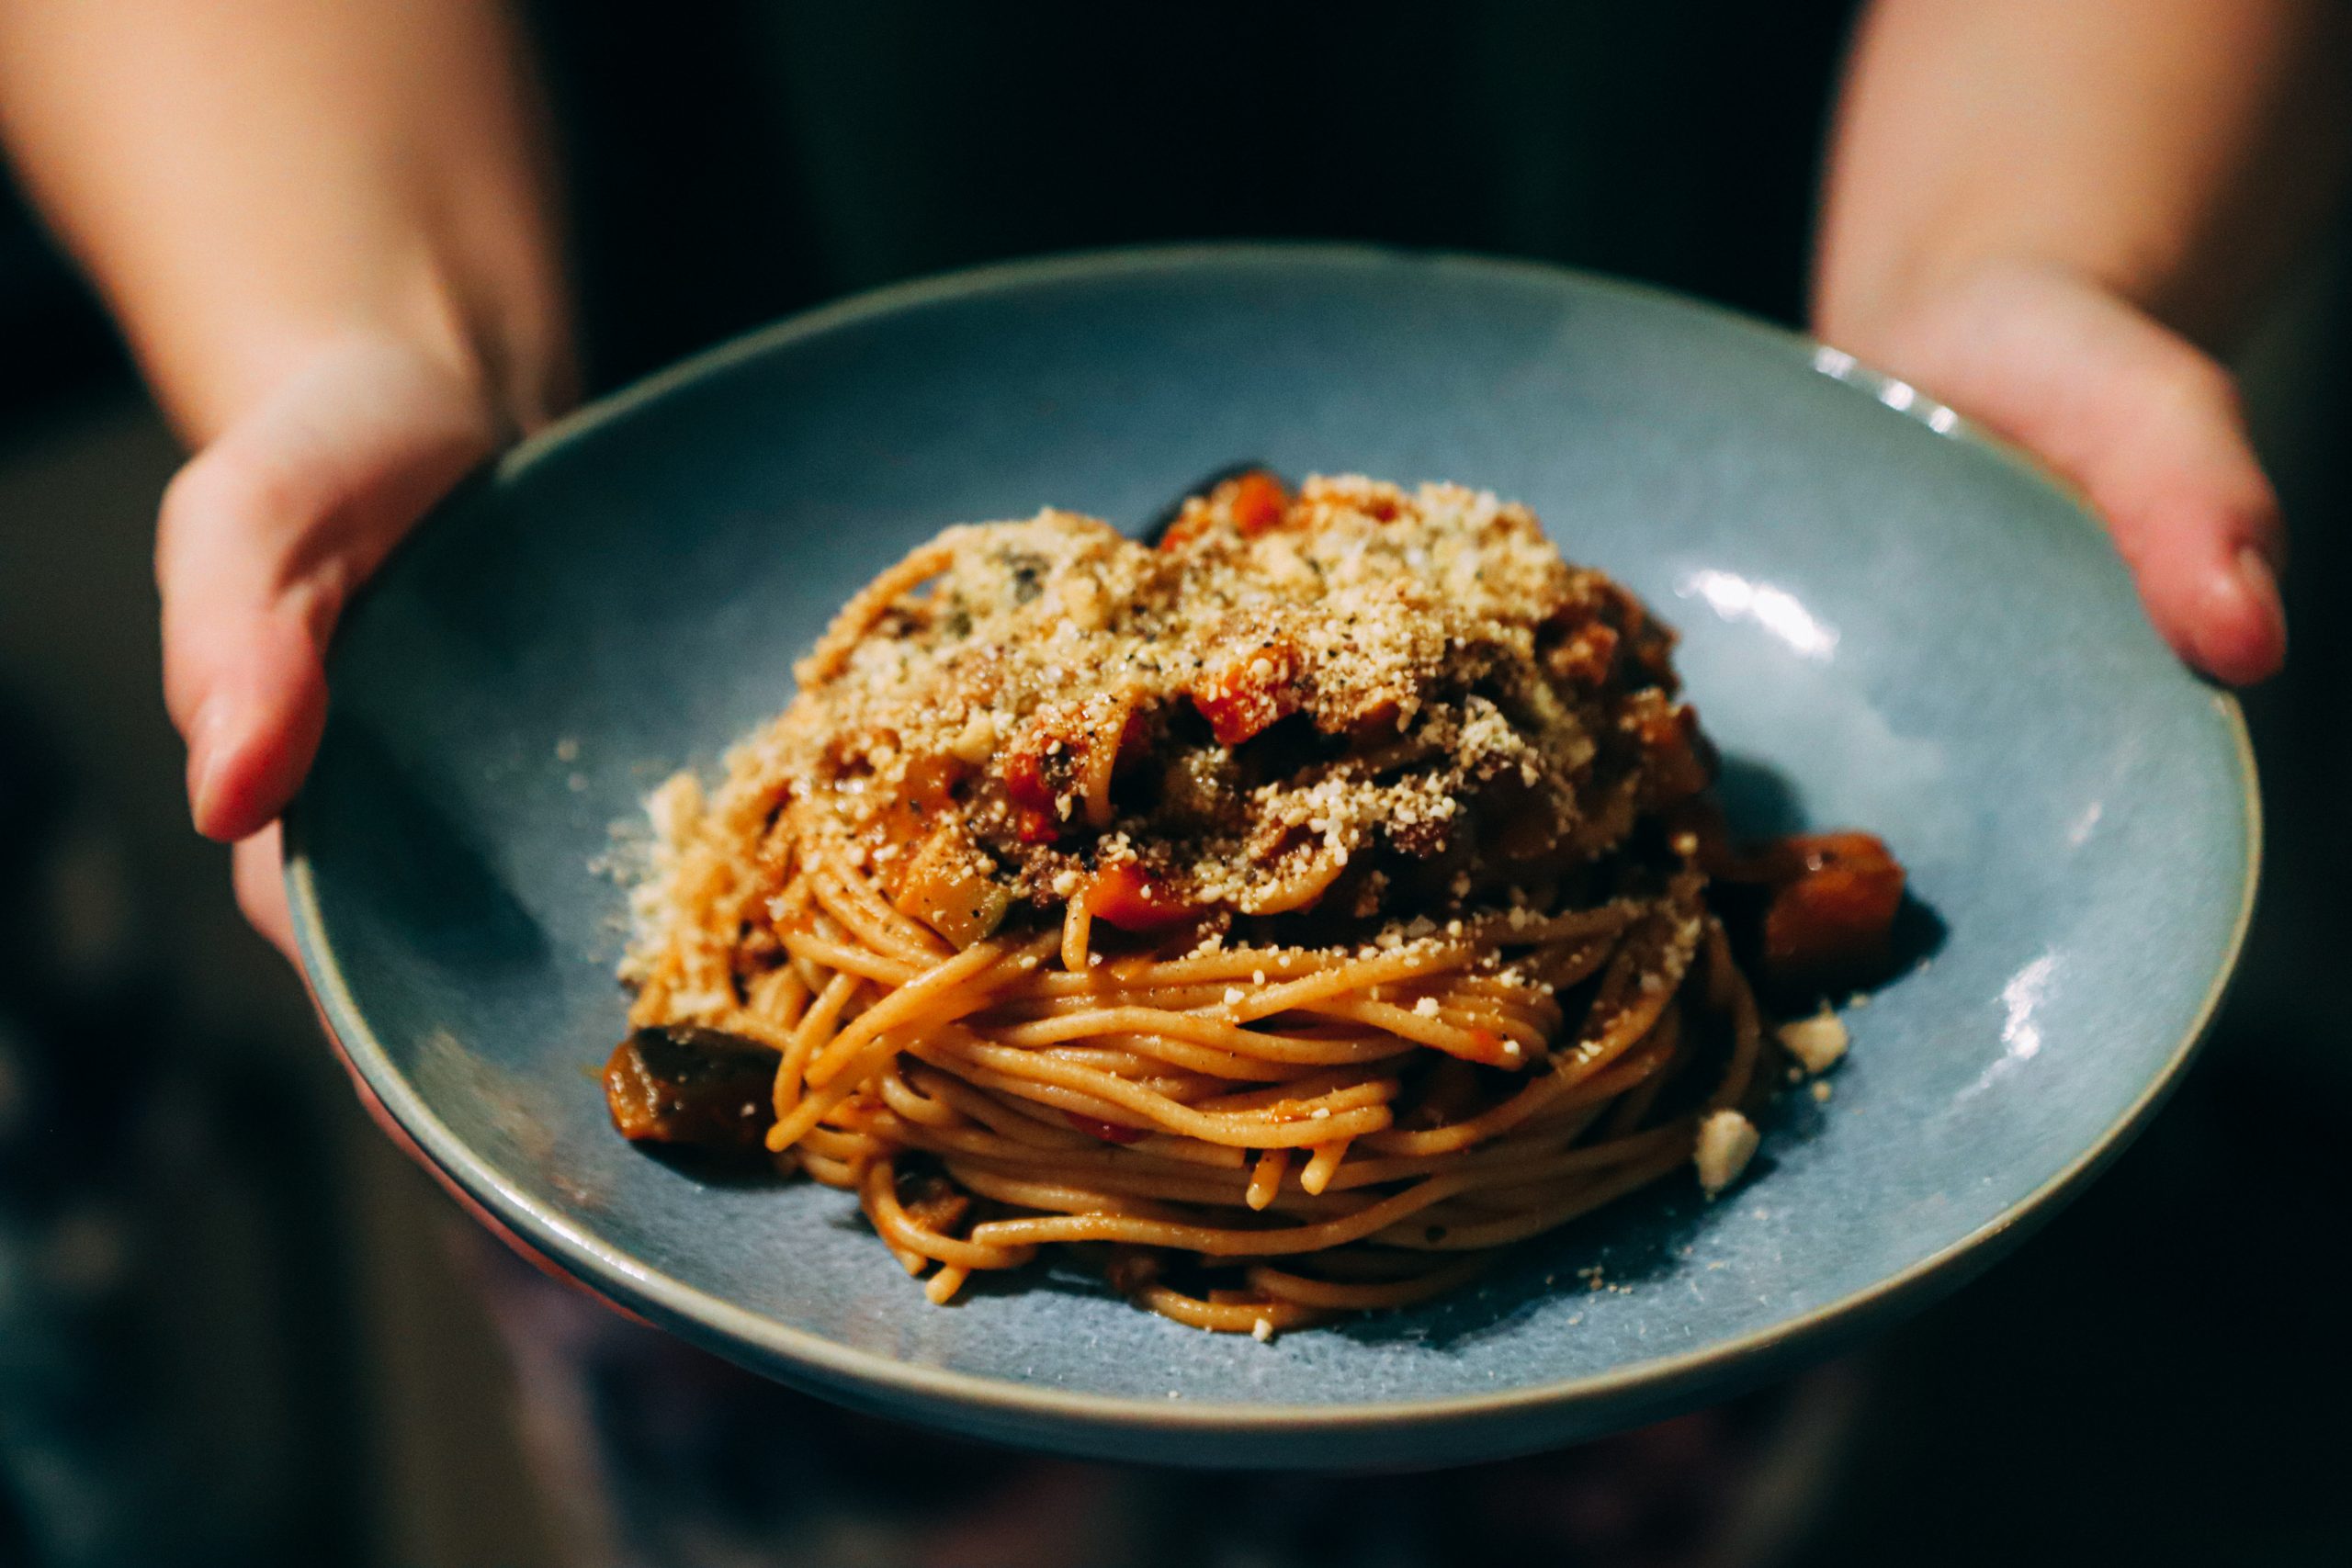 recept voor vegan ragu italiaanse pasta saus zonder vlees